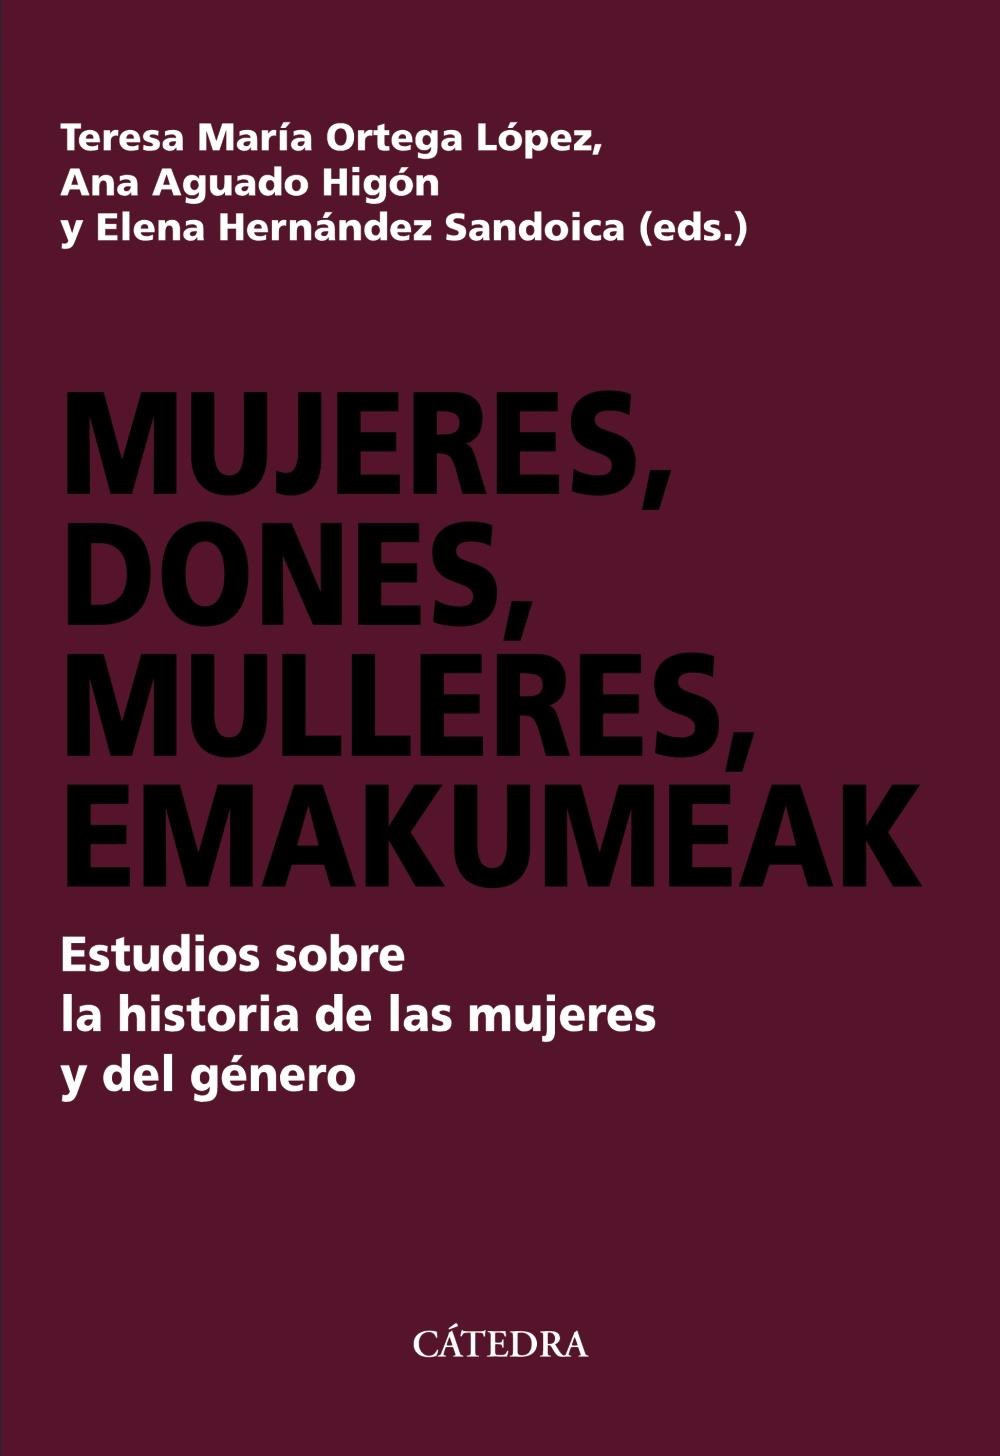 Mujeres, dones, mulleres, emakumeak "Estudios sobre la historia de las mujeres y del género". 